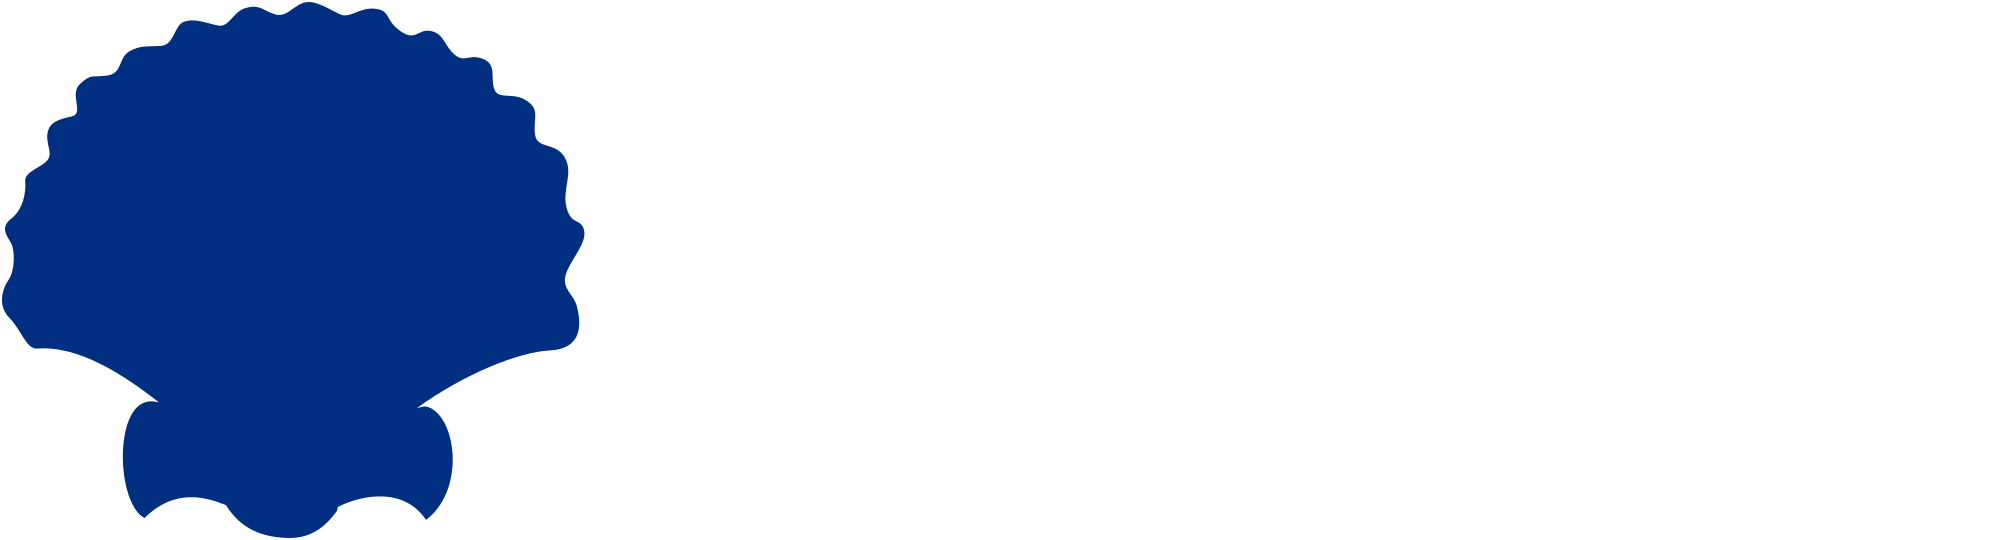 shellconstructionpartners.com